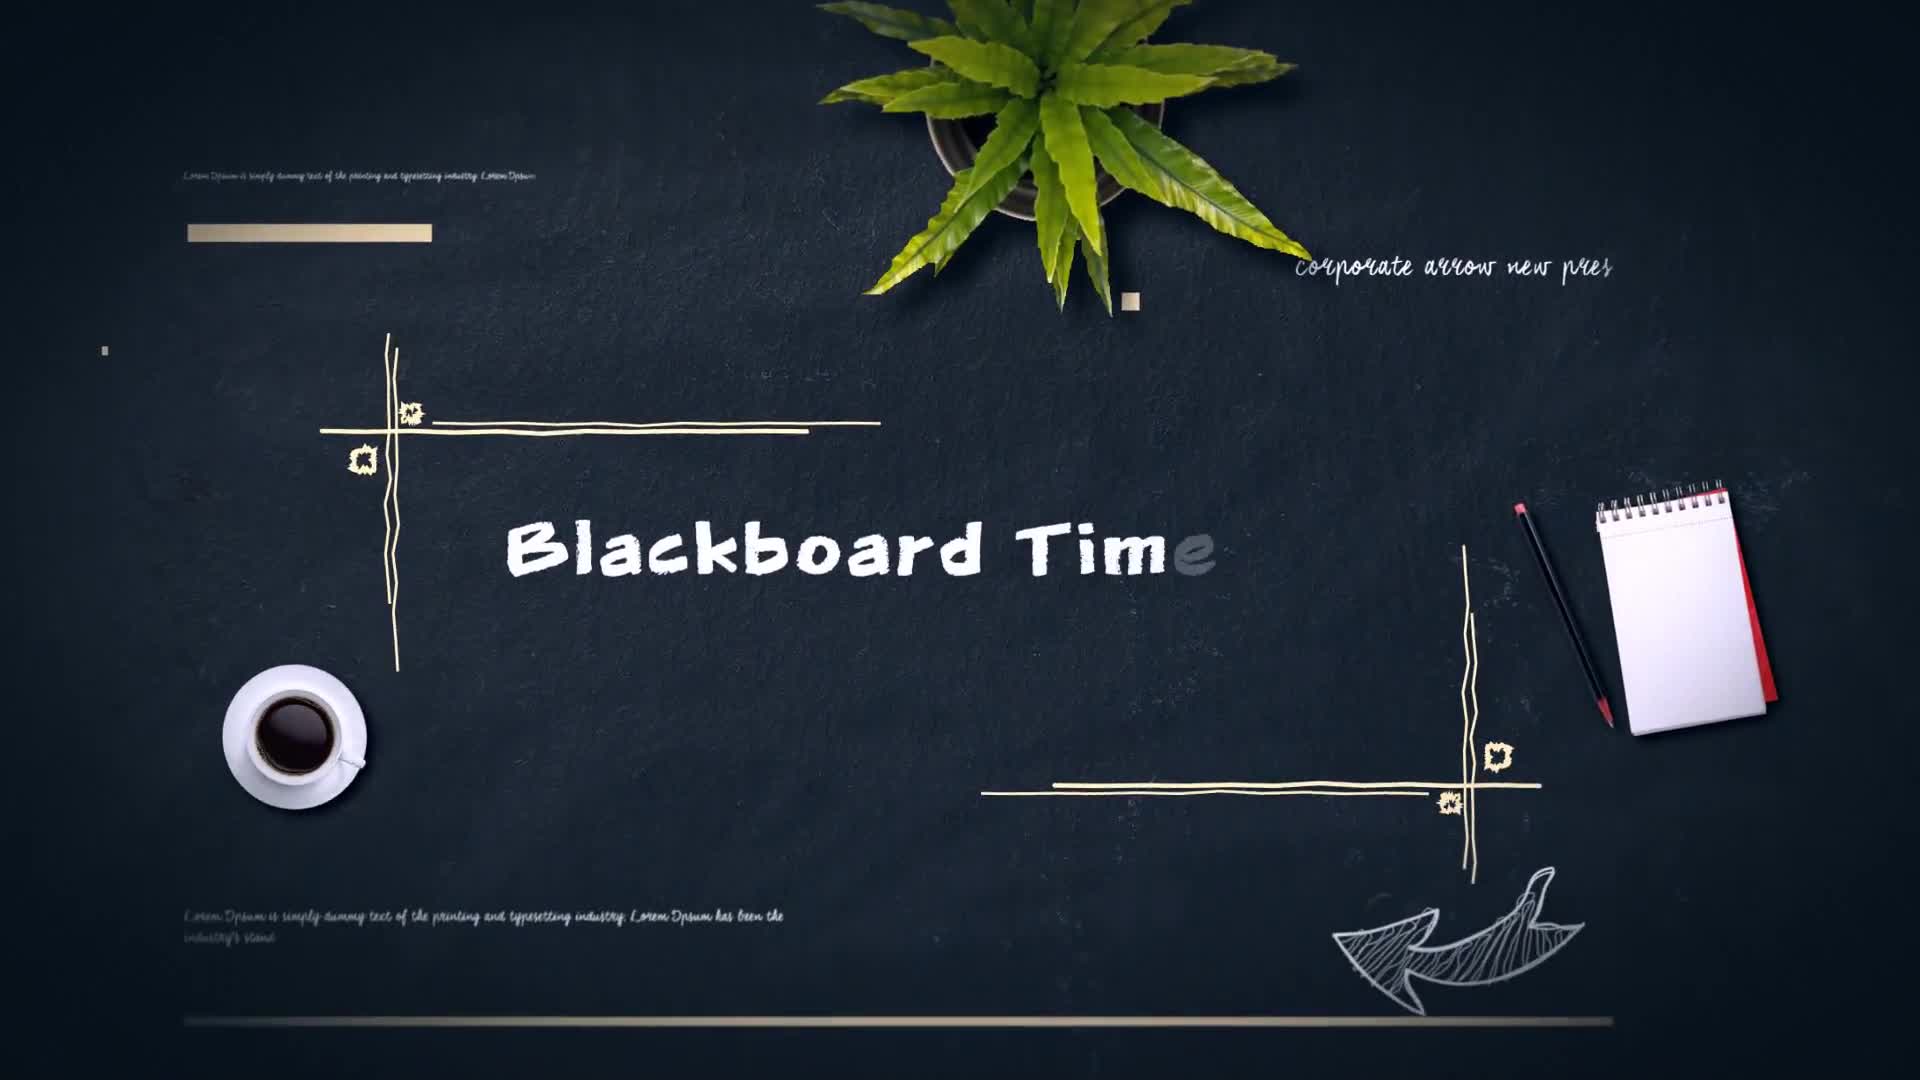 Blackboard Timeline Presentation Slideshow Videohive 23412790 After Effects Image 1